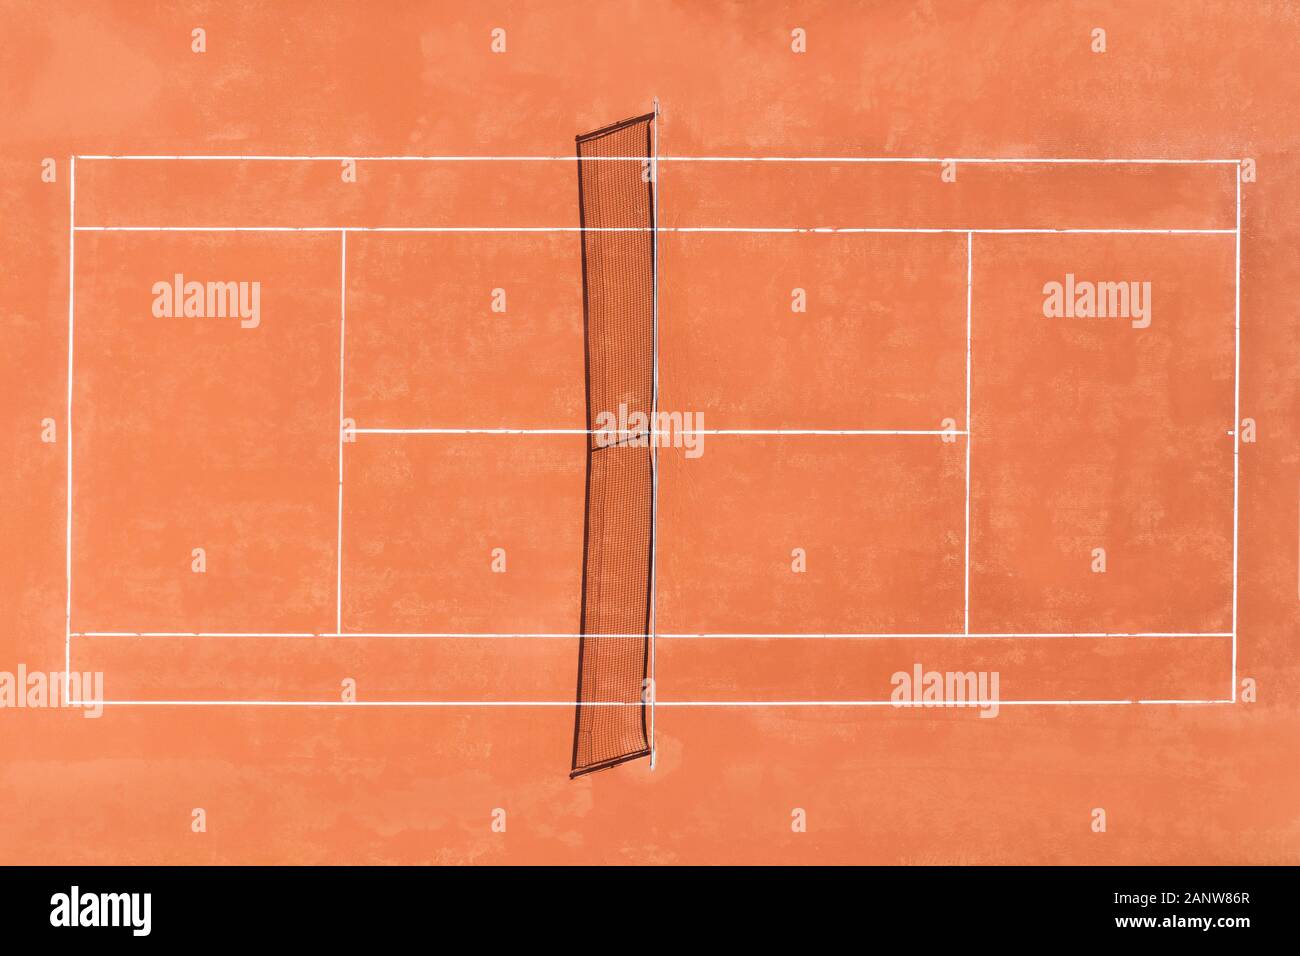 Vista aerea di un rosso prfessional clay court, pronti a giocare a tennis Foto Stock